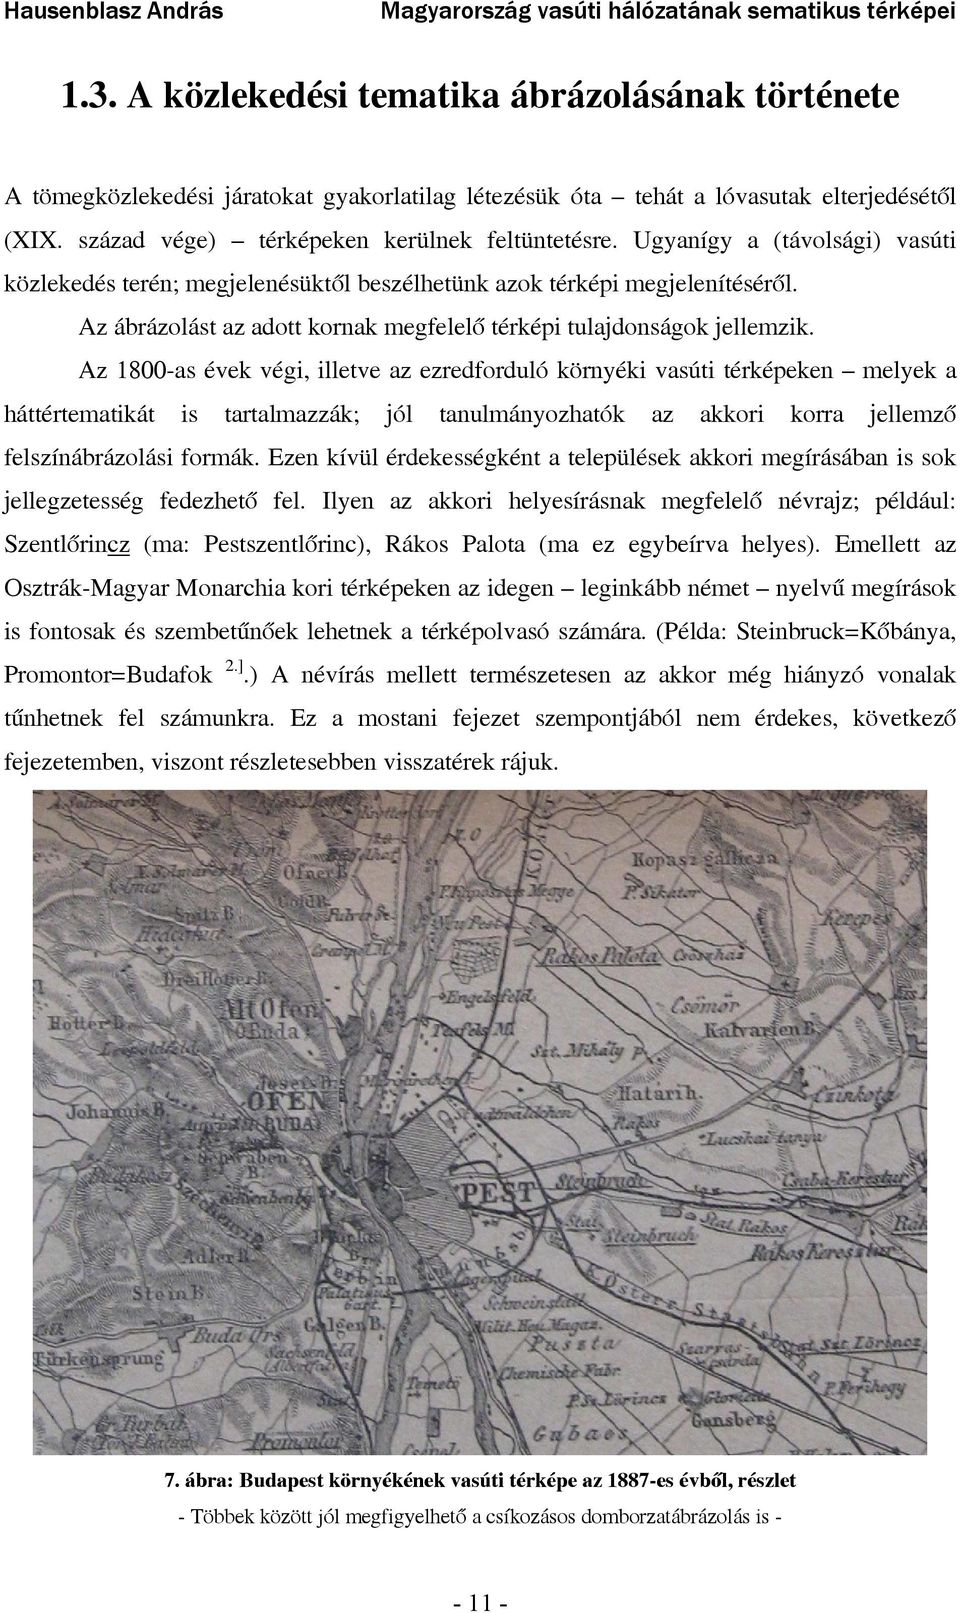 Az 1800-as évek végi, illetve az ezredforduló környéki vasúti térképeken melyek a háttértematikát is tartalmazzák; jól tanulmányozhatók az akkori korra jellemző felszínábrázolási formák.